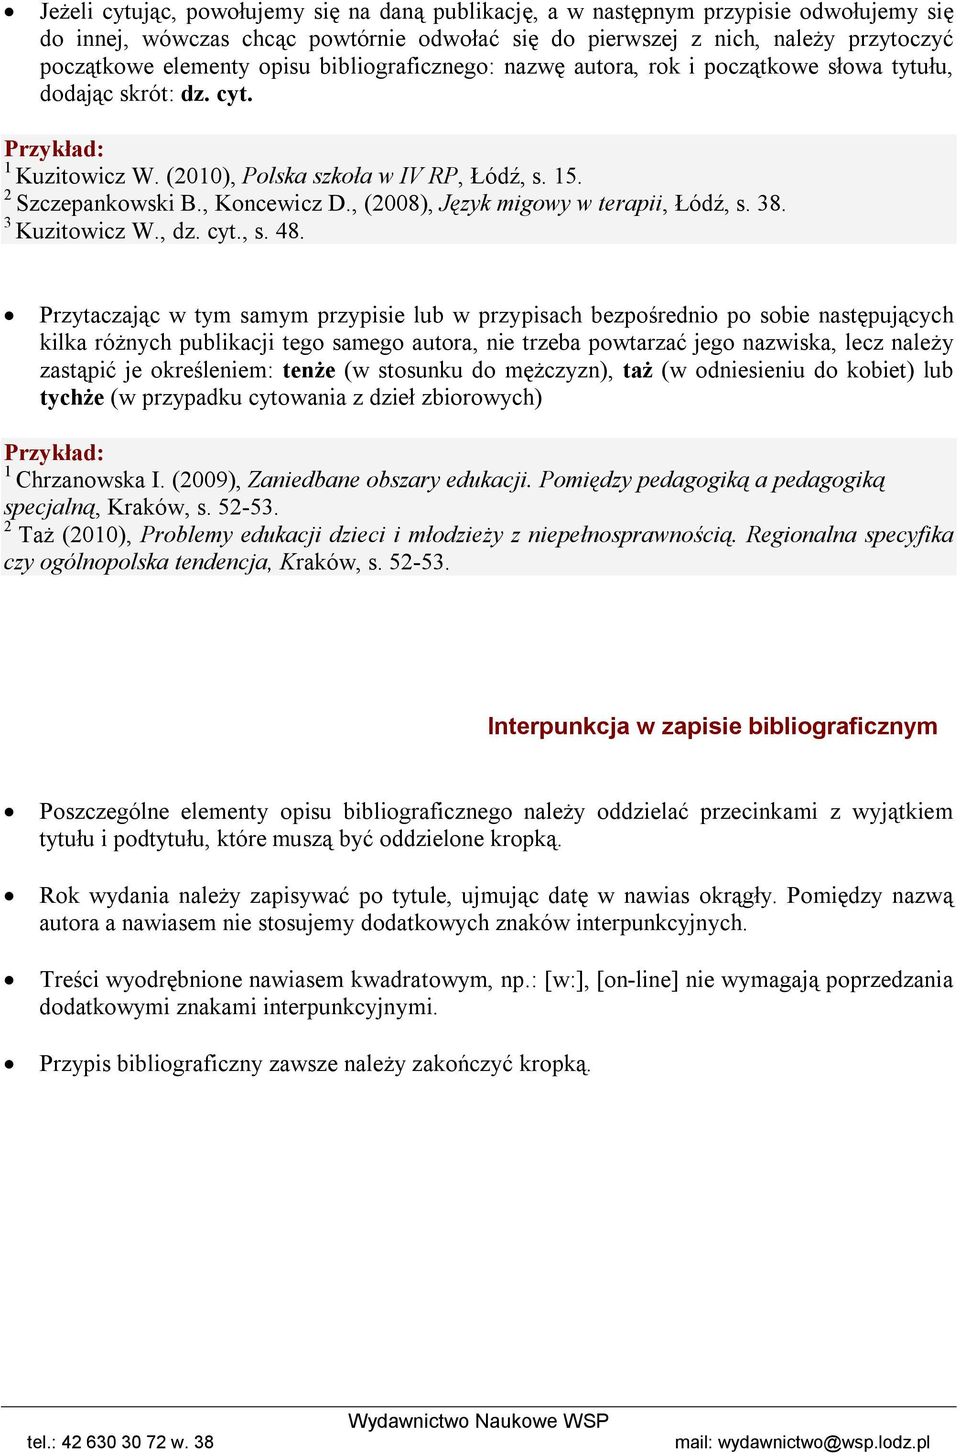 , (2008), Język migowy w terapii, Łódź, s. 38. 3 Kuzitowicz W., dz. cyt., s. 48.